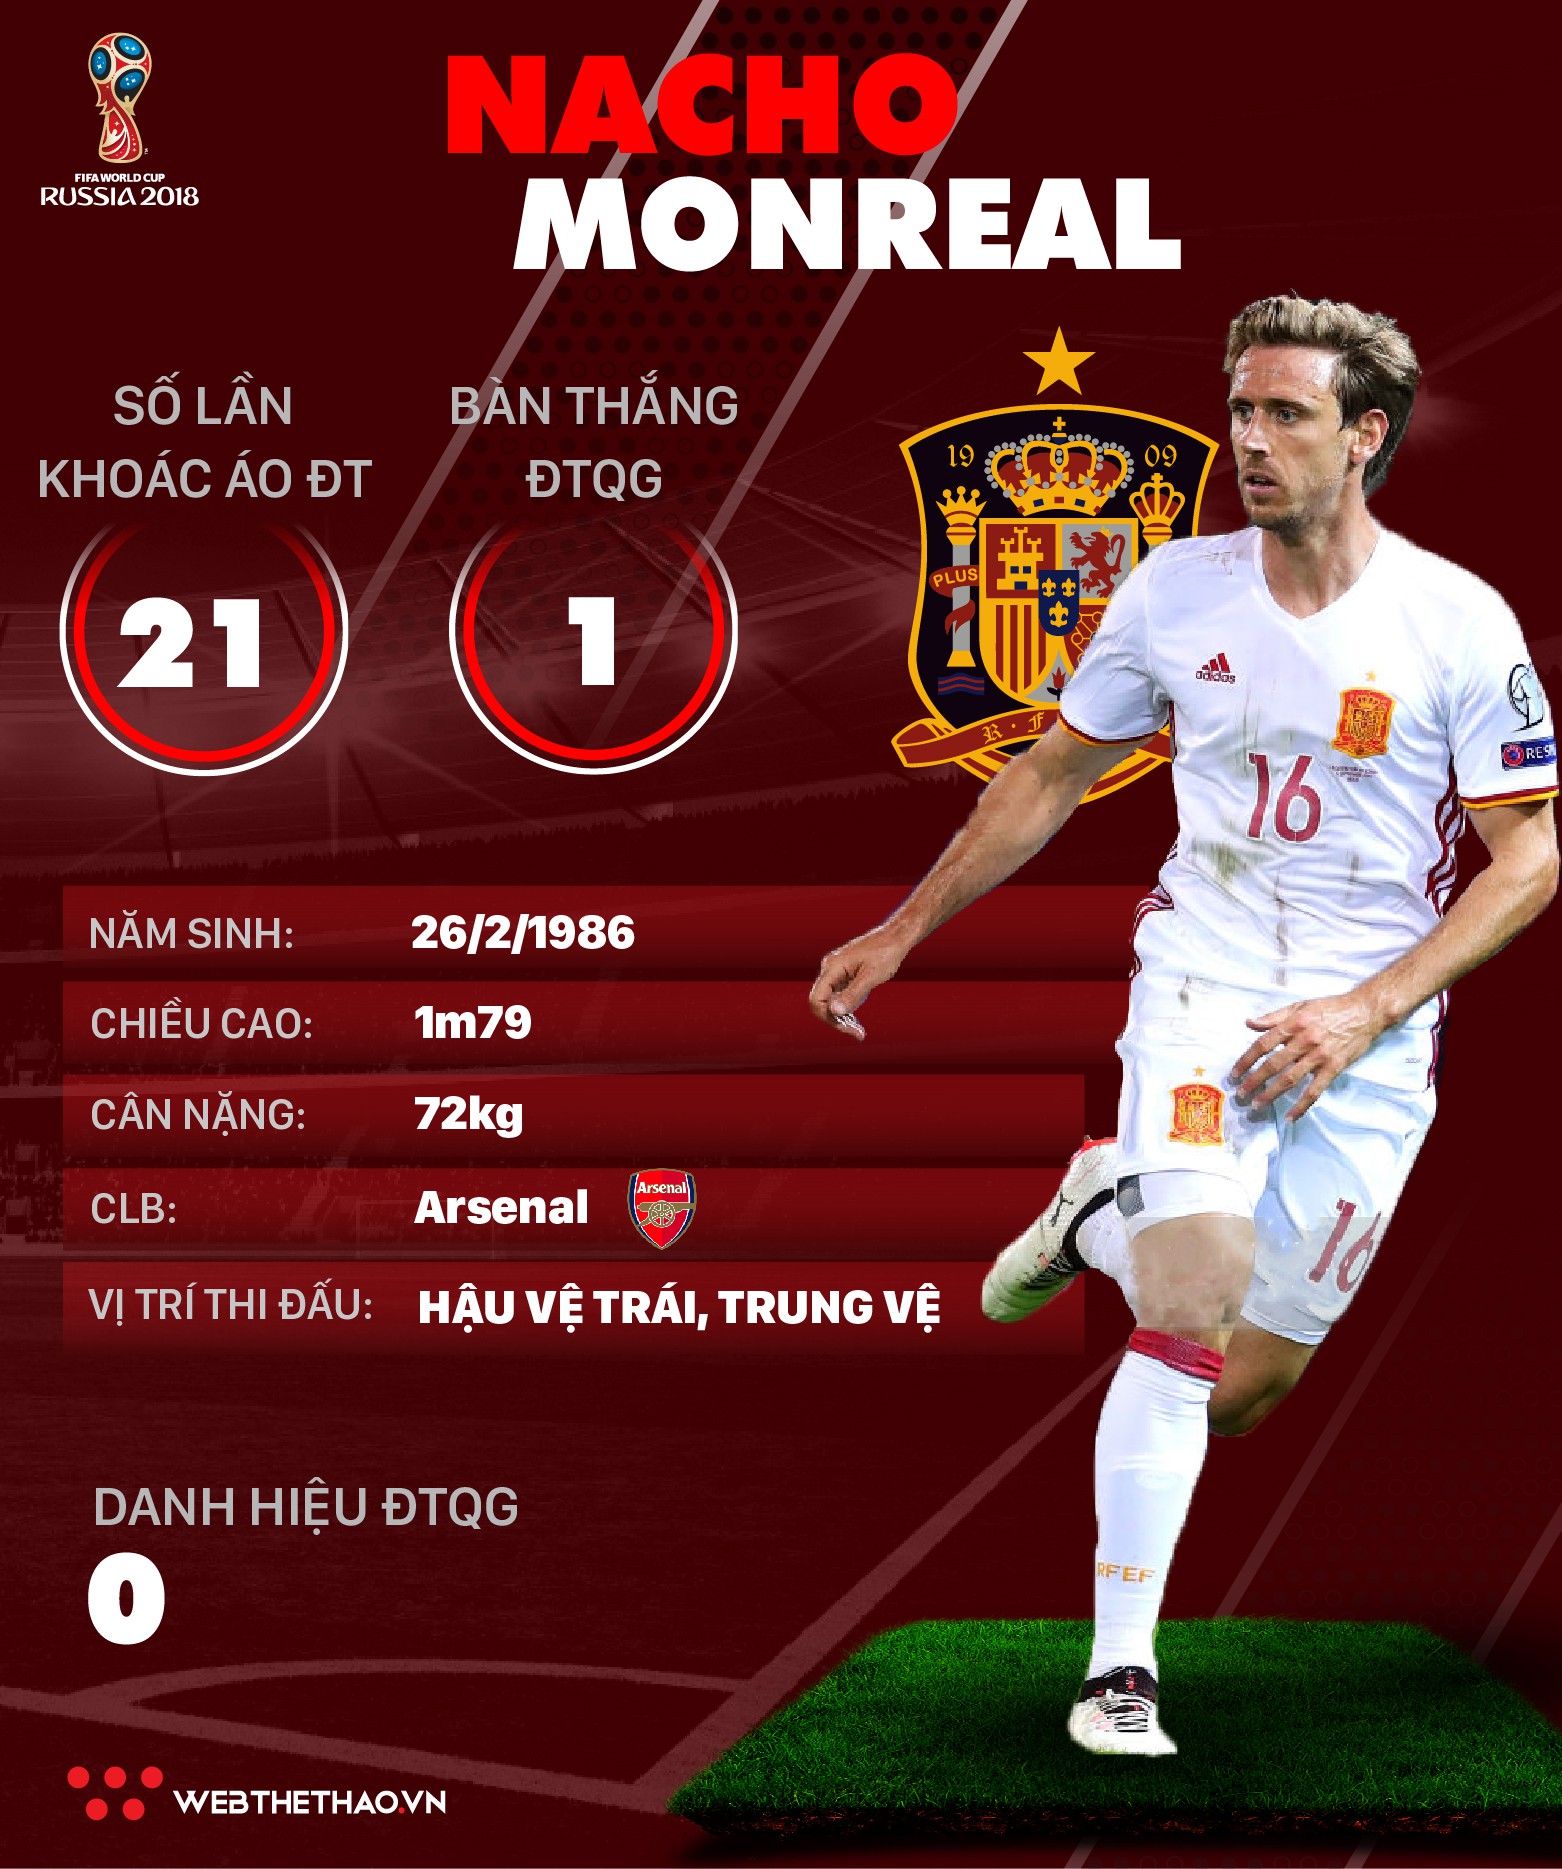 Thông tin cầu thủ Nacho Monreal của ĐT Tây Ban Nha dự World Cup 2018 - Ảnh 1.